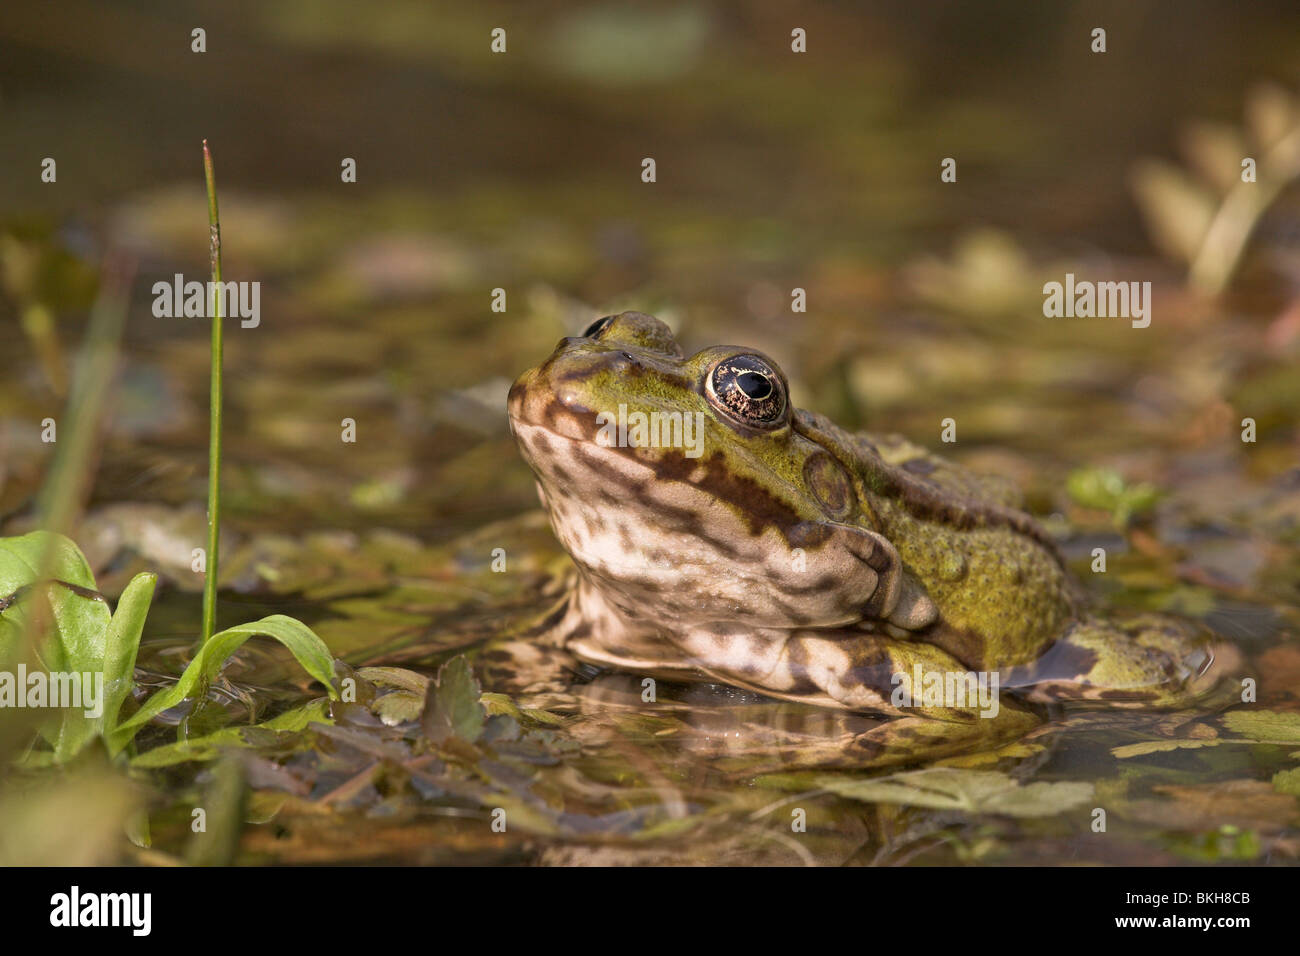 Photo d'une grenouille des marais assis sur la végétation dans l'eau Banque D'Images